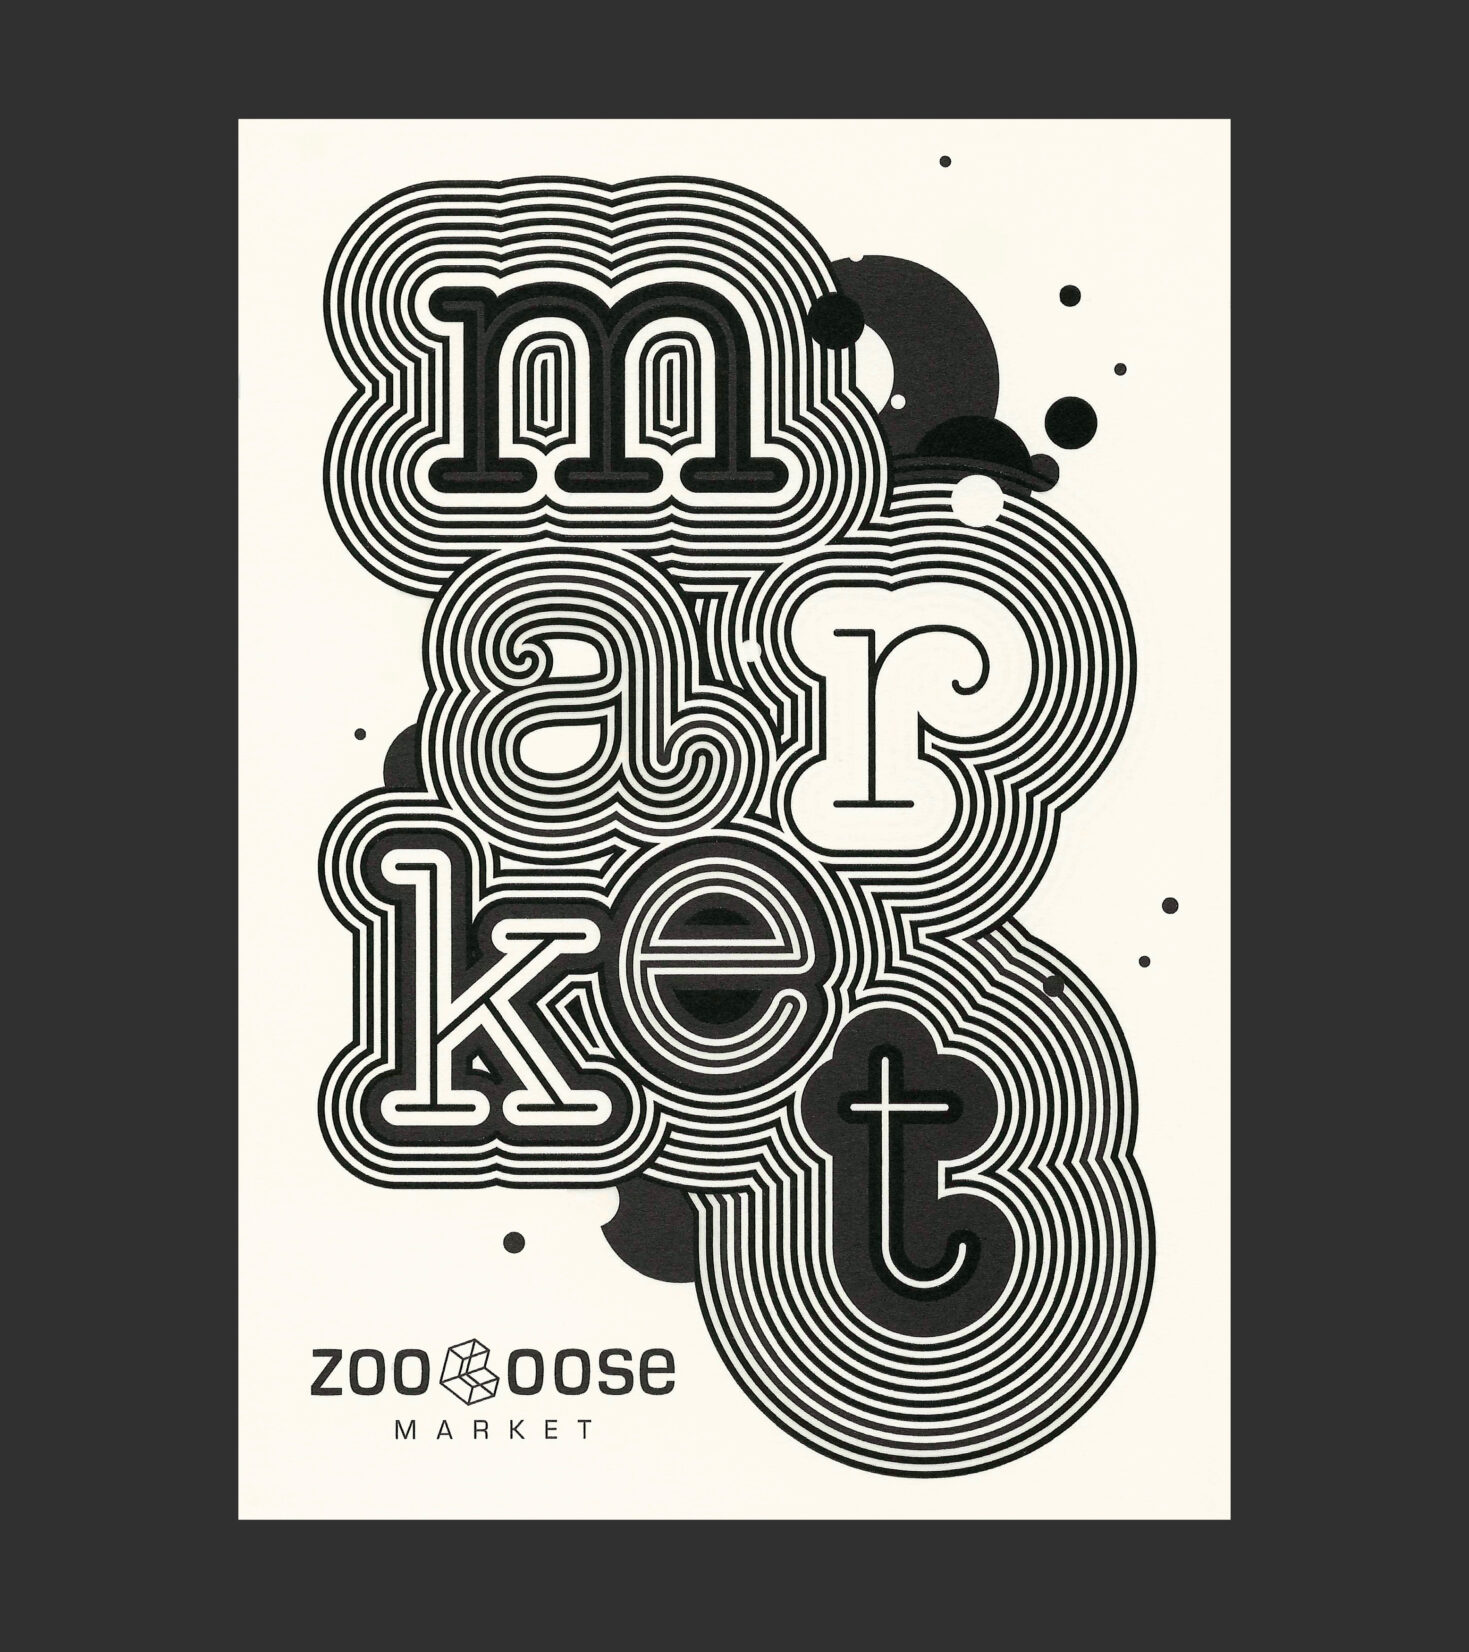 Postkarte für Zooloose Market mit spannendem Grafikdesign von Grafikdesign Cueni Basel.